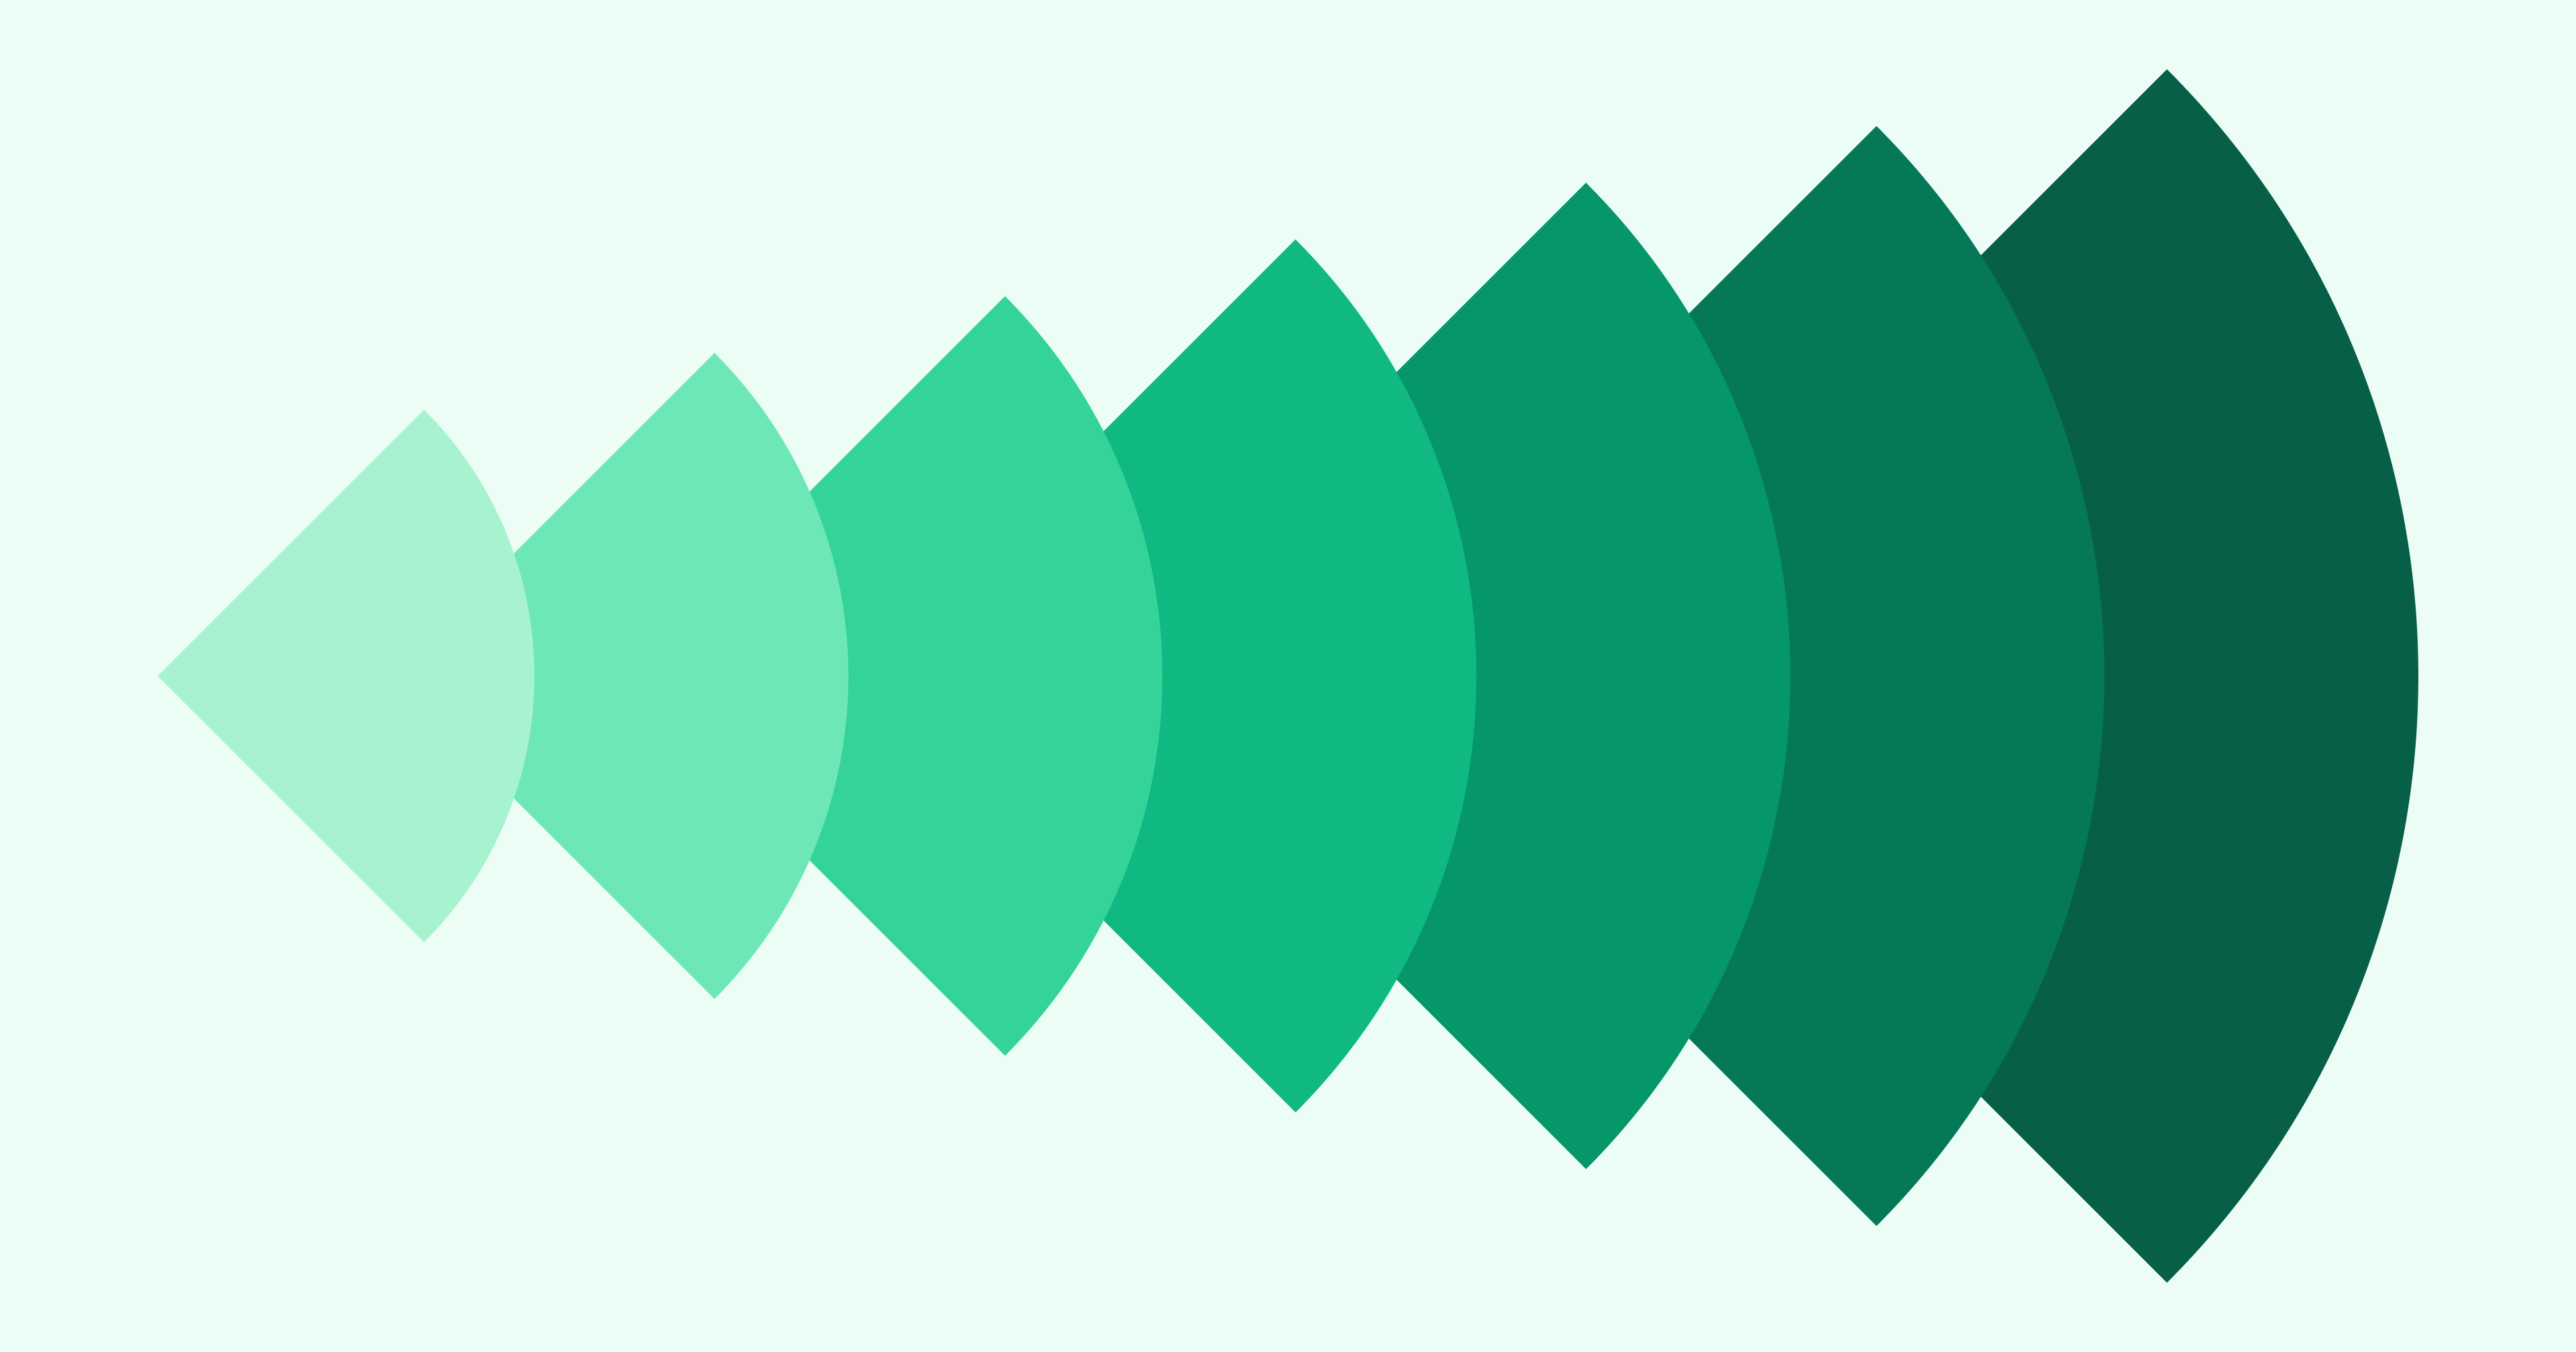 abstraktes Muster mit grünen Viertelkreisen